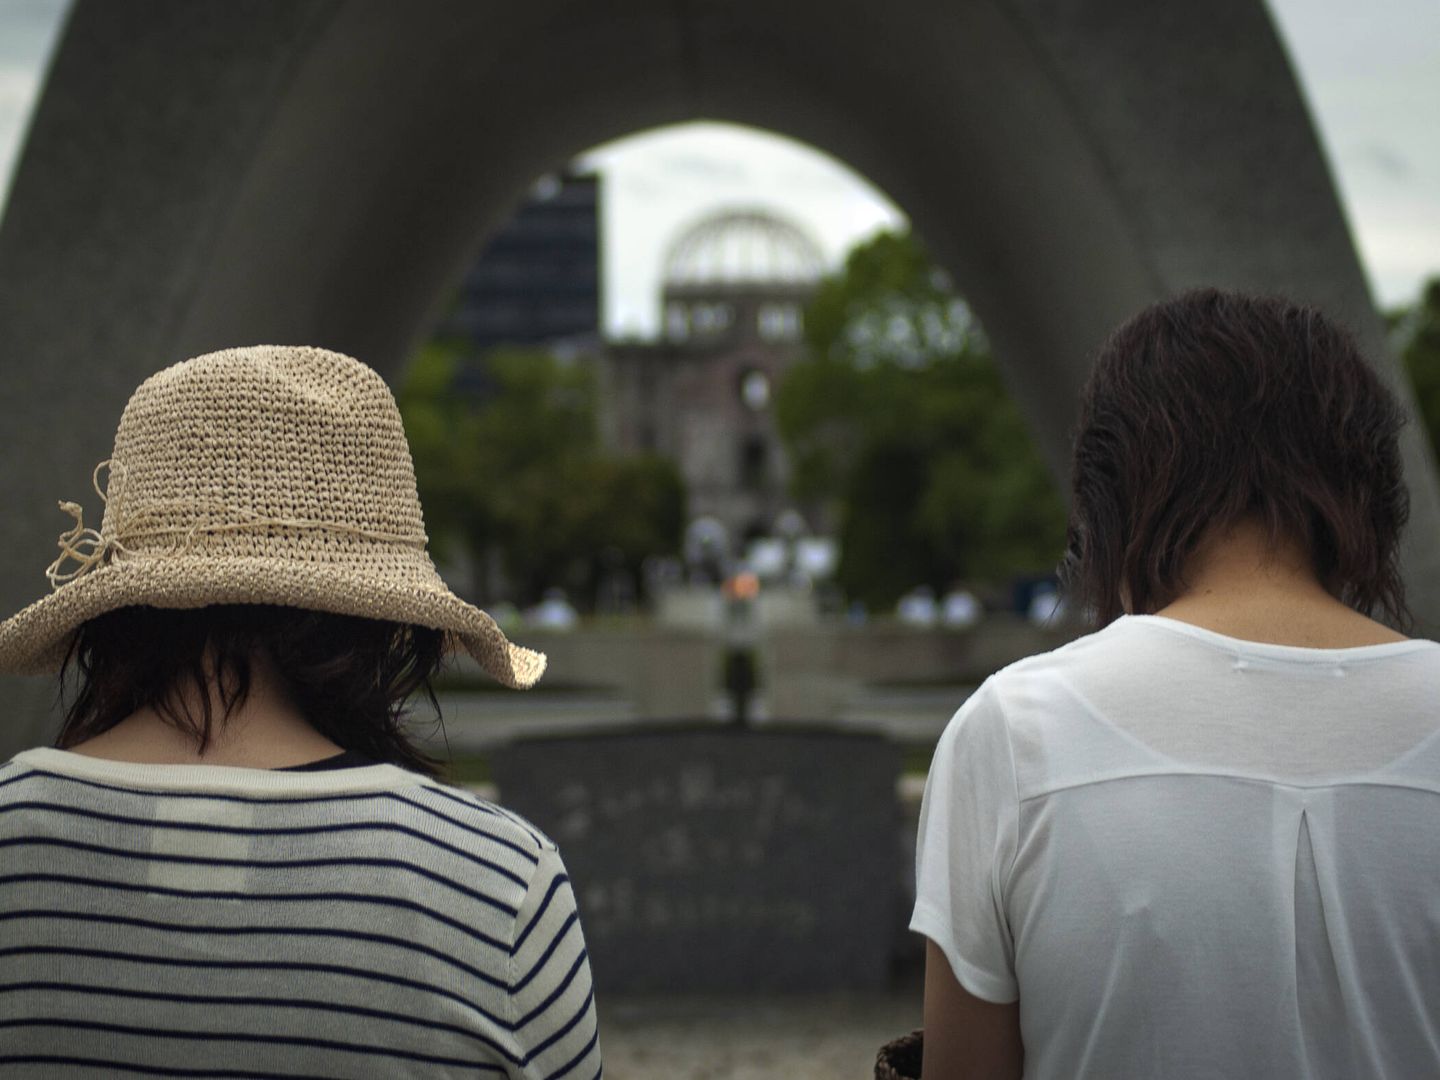 Dos jovenes, rezando ante el cenatofio de Hiroshima en memoria de las víctimas de la bomba atómica. TOÑI GUERRERO